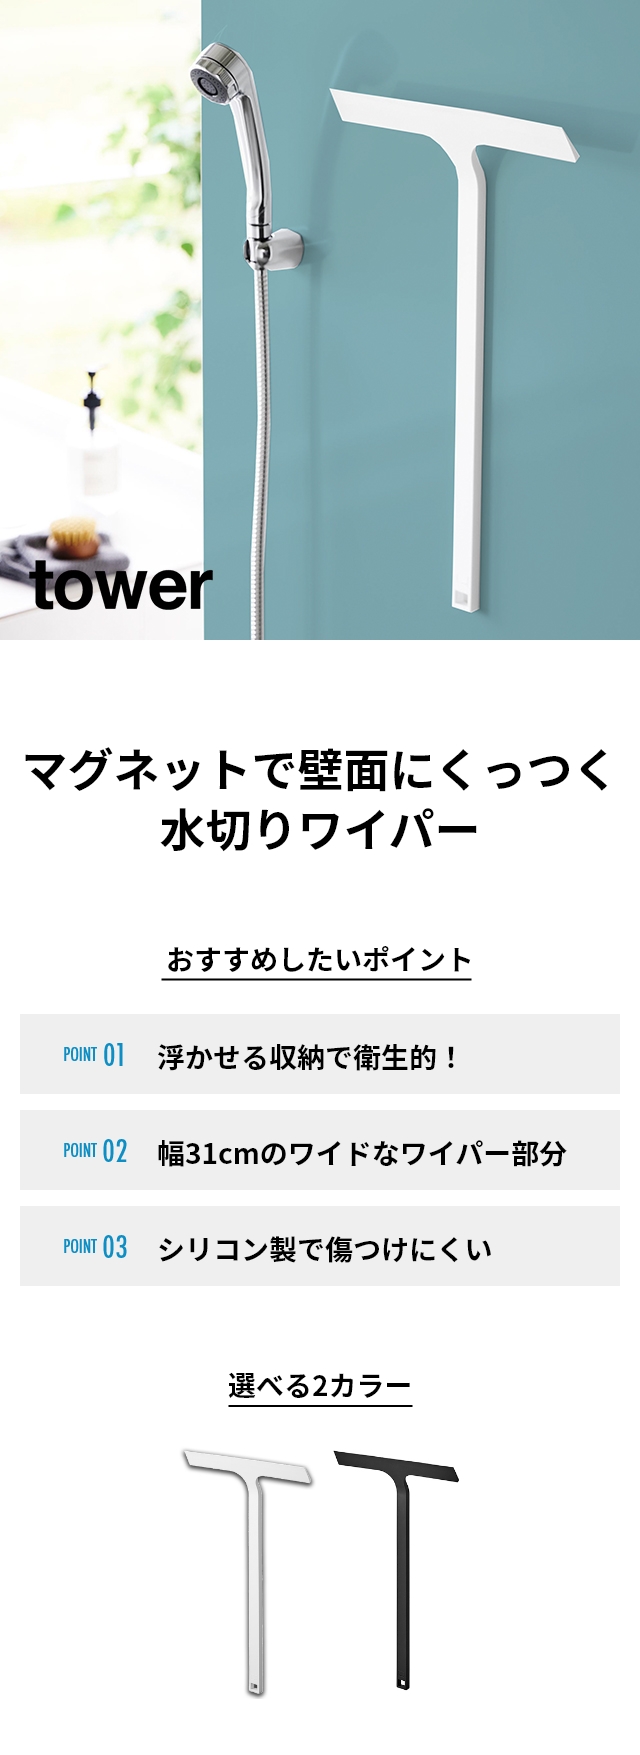 tower(タワー) マグネット水切りワイパー ロング